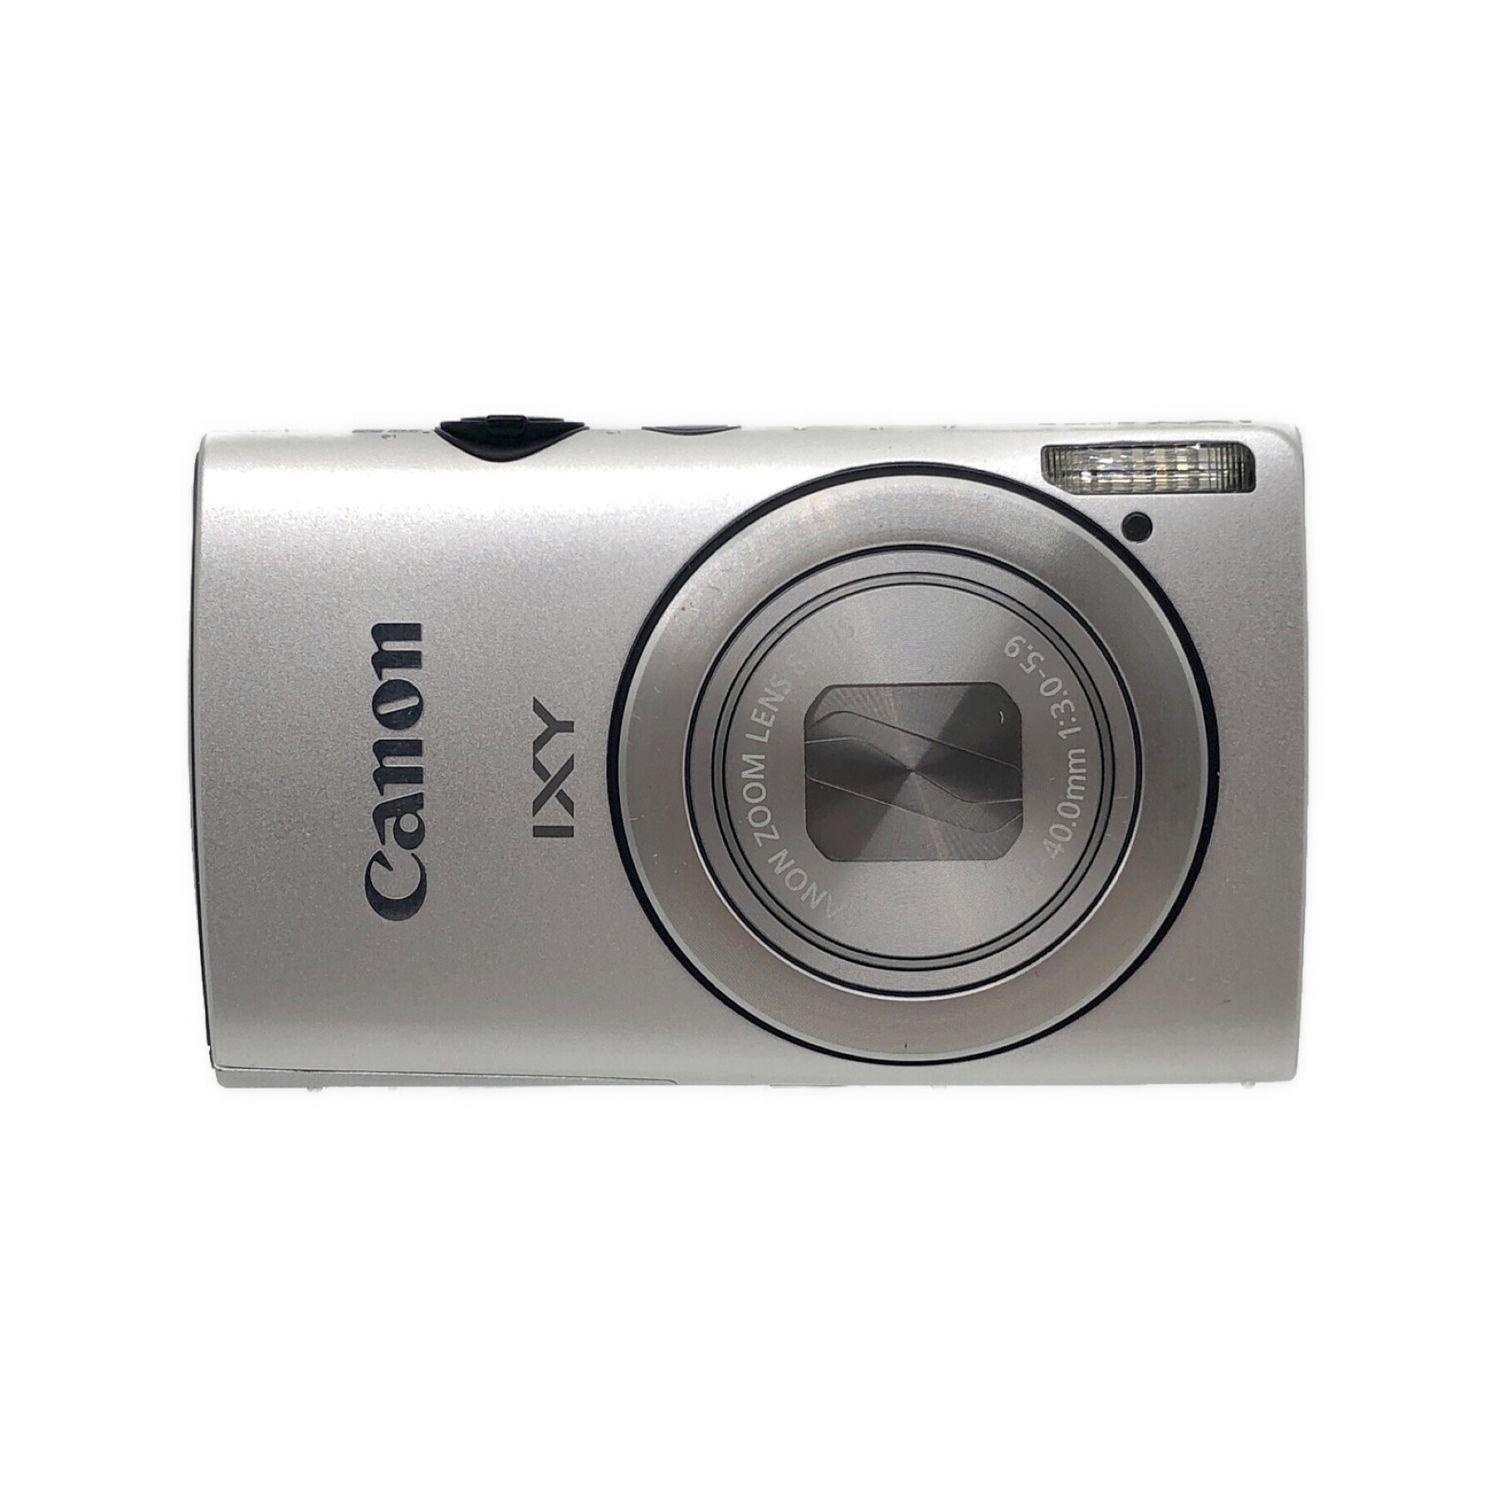 CANON IXY600F FULLHD コンパクトデジタルカメラ コンデジ - デジタル